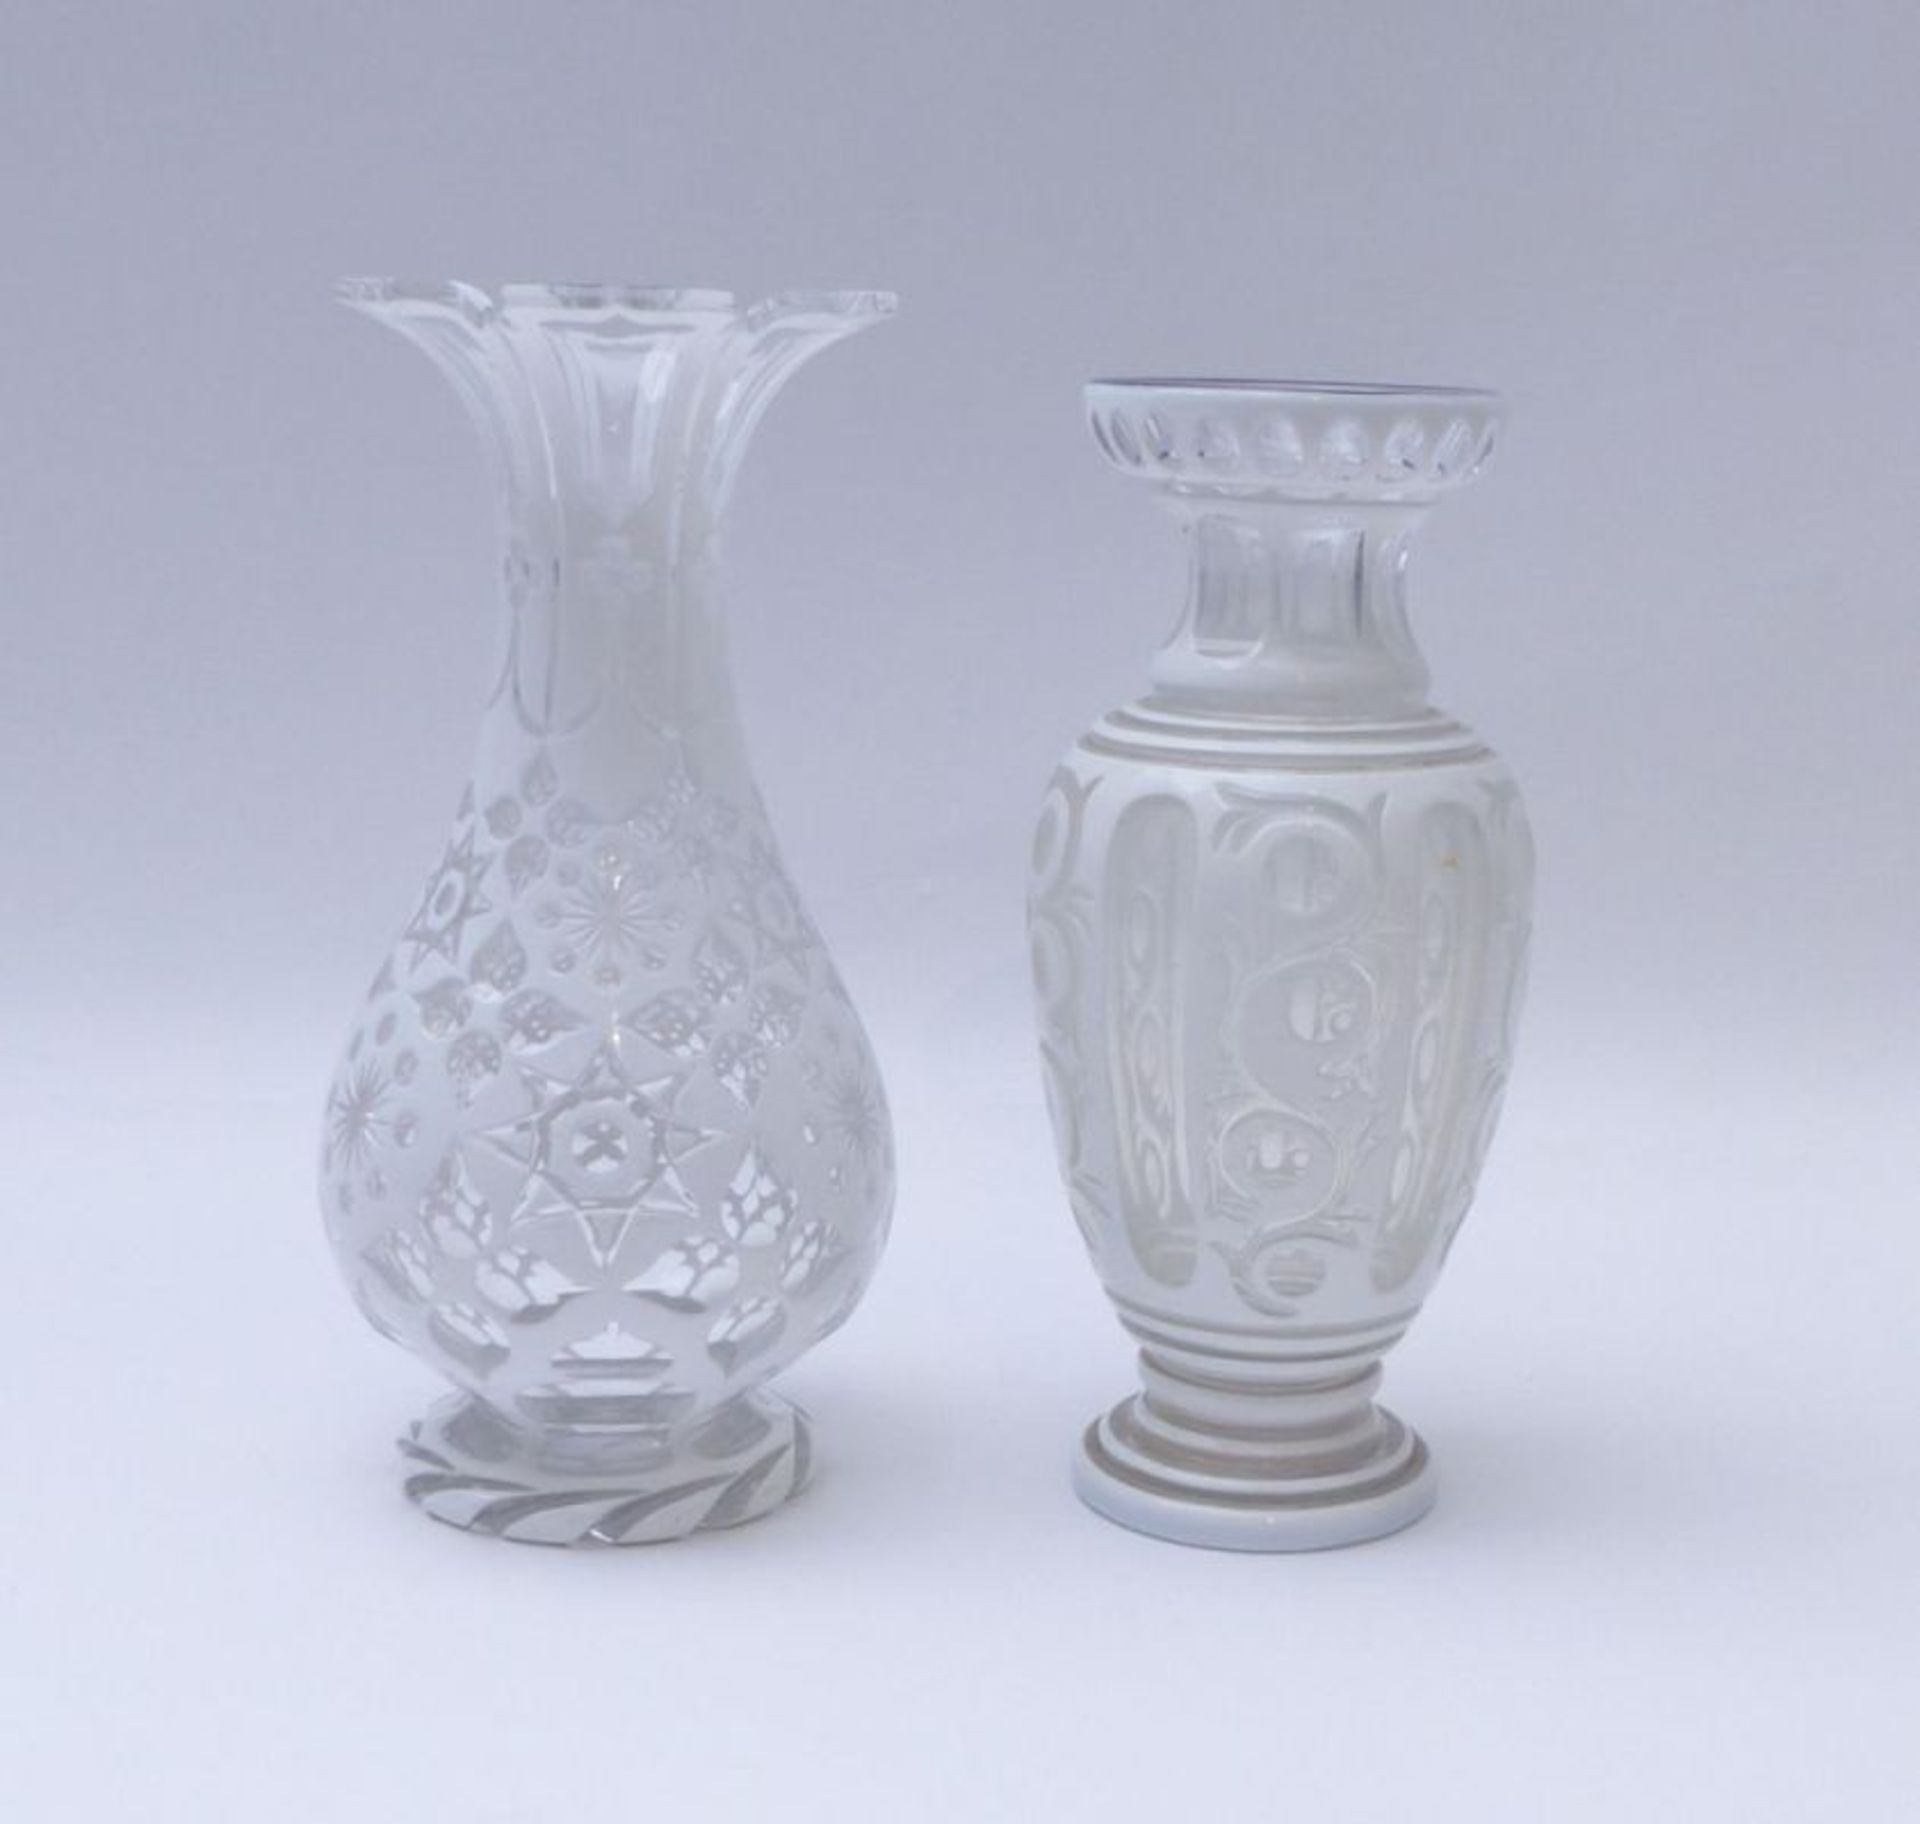 Zwei Vasen mit weißem Emaildekor, Böhmen, 20. Jh. - Image 2 of 3